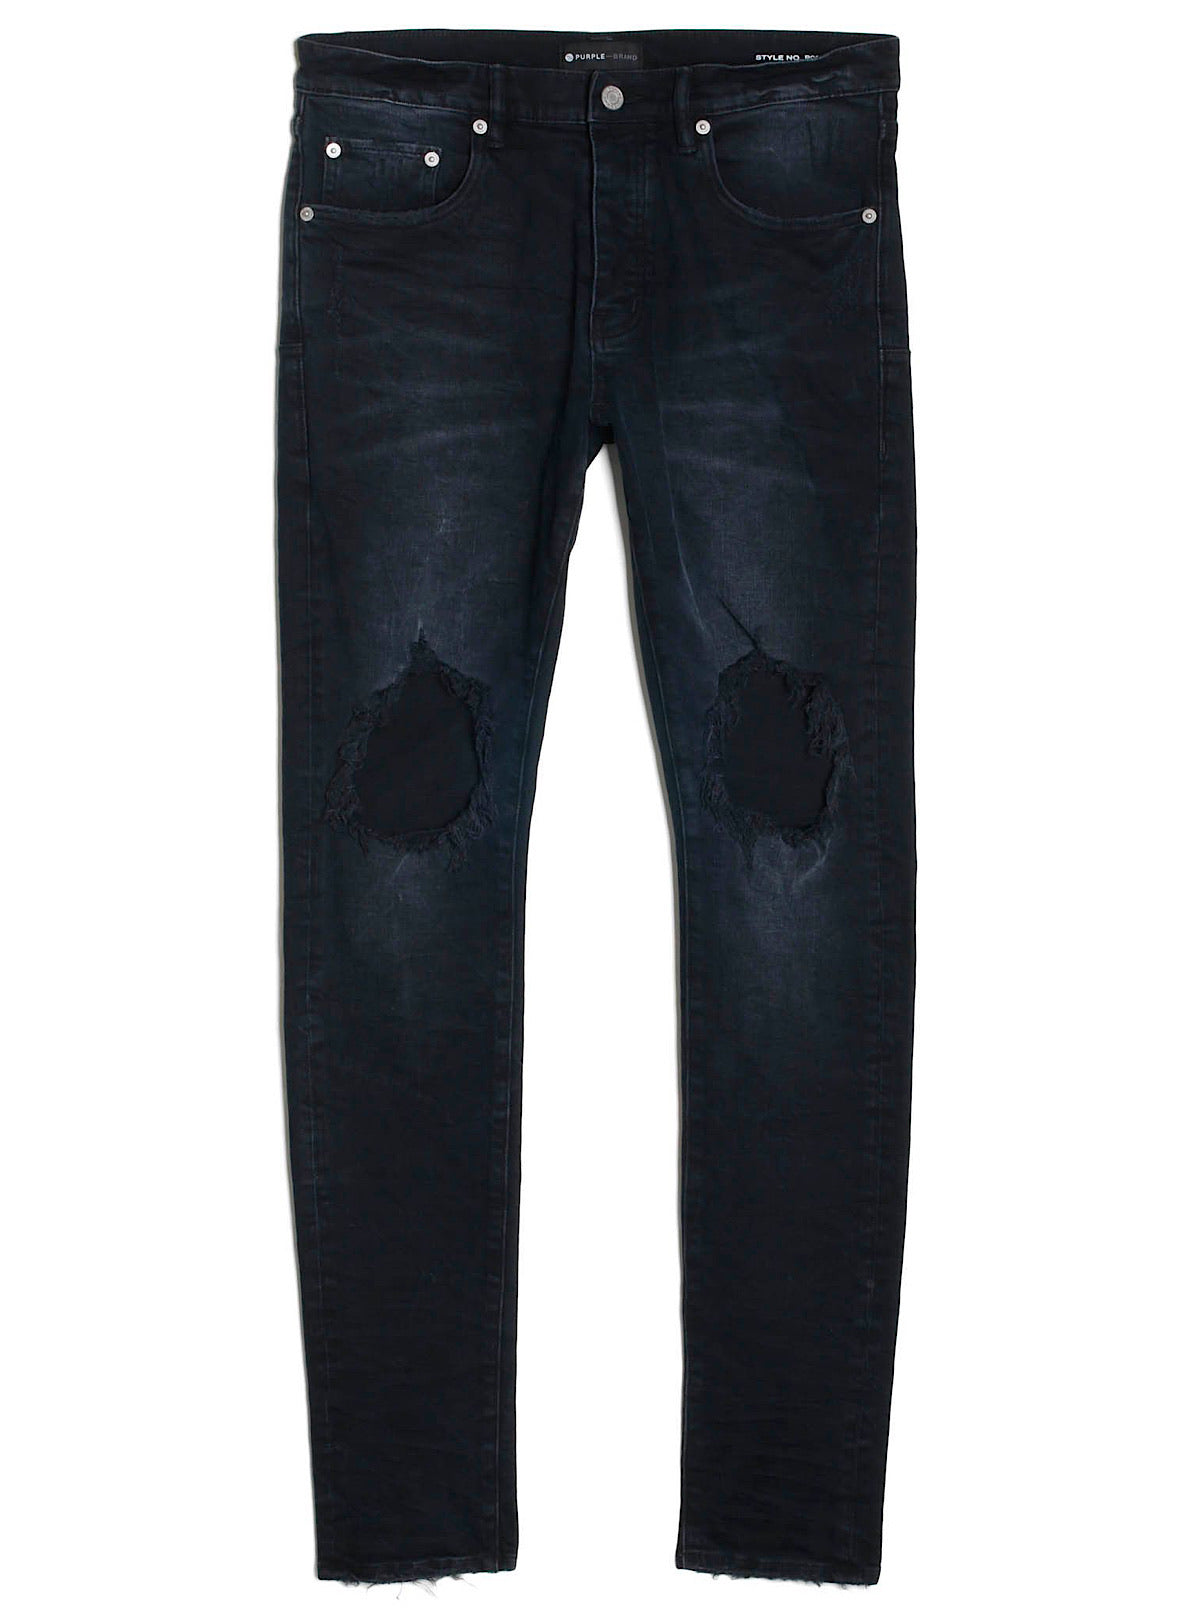 Purple brand jeans P002  Jeans brands, Clothes design, Fashion